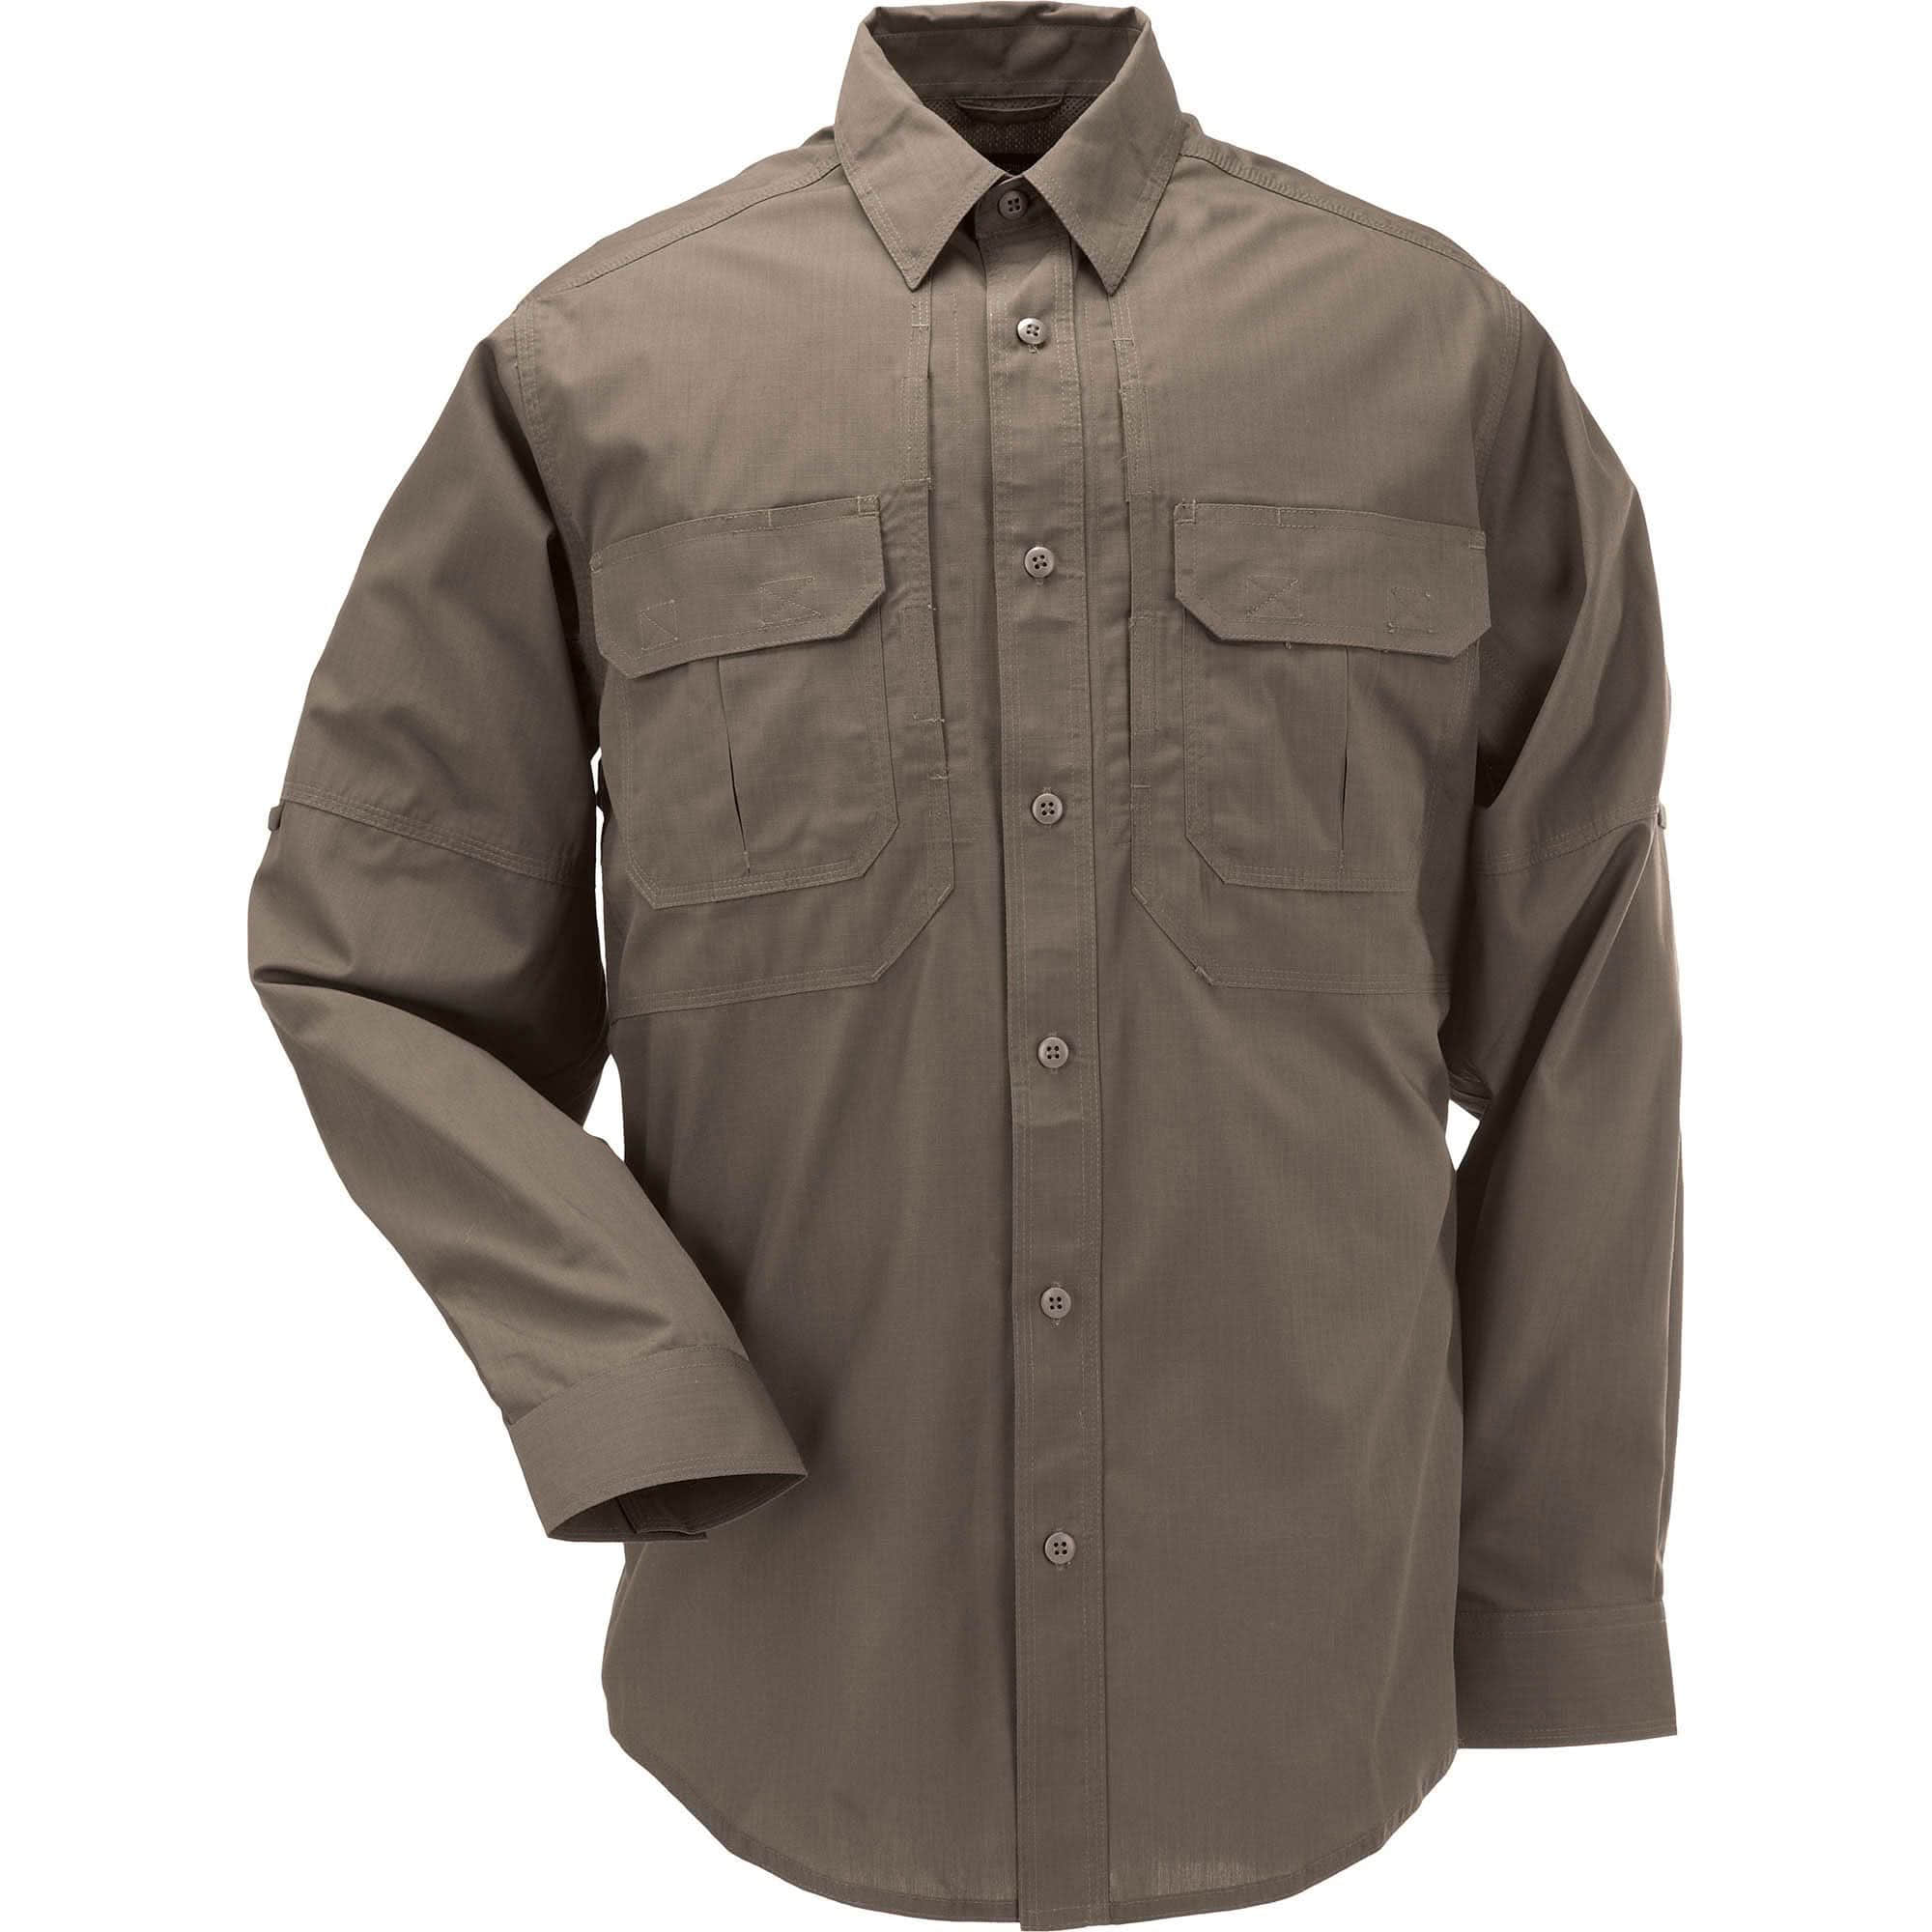 Серая военная форма. Тактическая рубашка 5.11 Tactical. 5.11 Taclite Pro рубашка. 511 Tactical тактическая рубашка. 5.11 Tactical Taclite Pro.